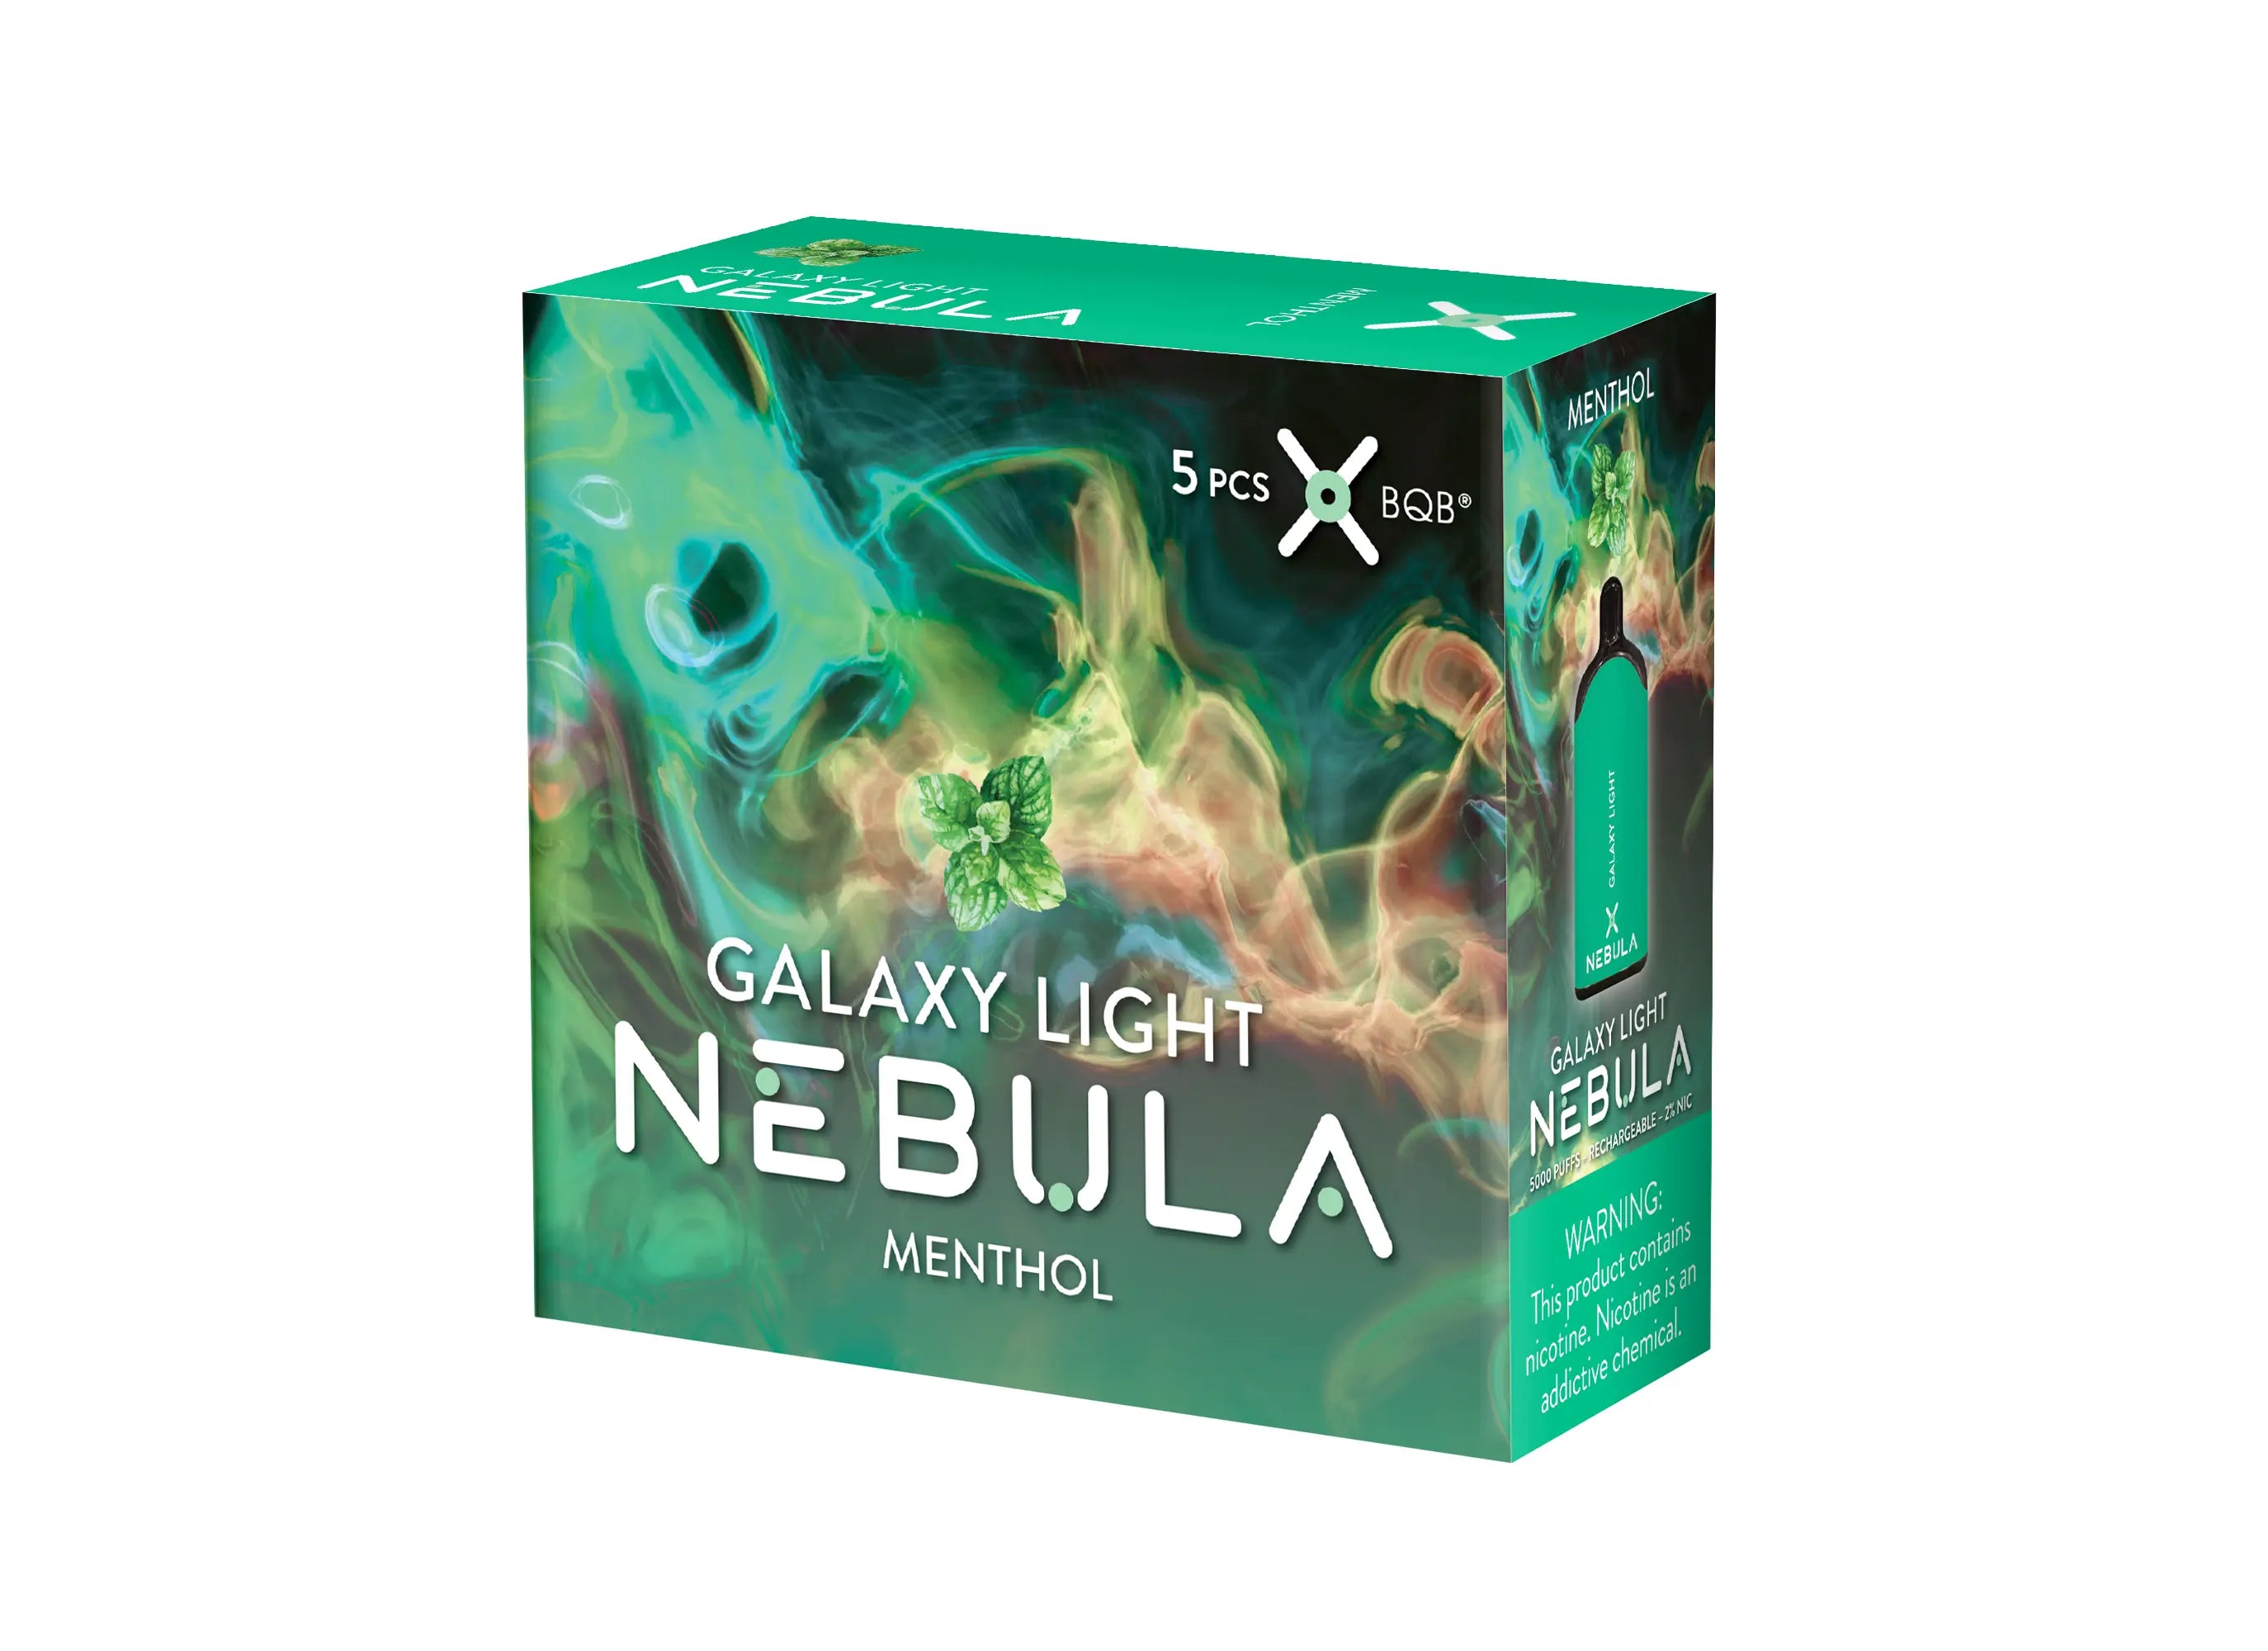 Nebula Galaxy Light 2% 5000 Puffs Vape - Menthol - B2B Nebula